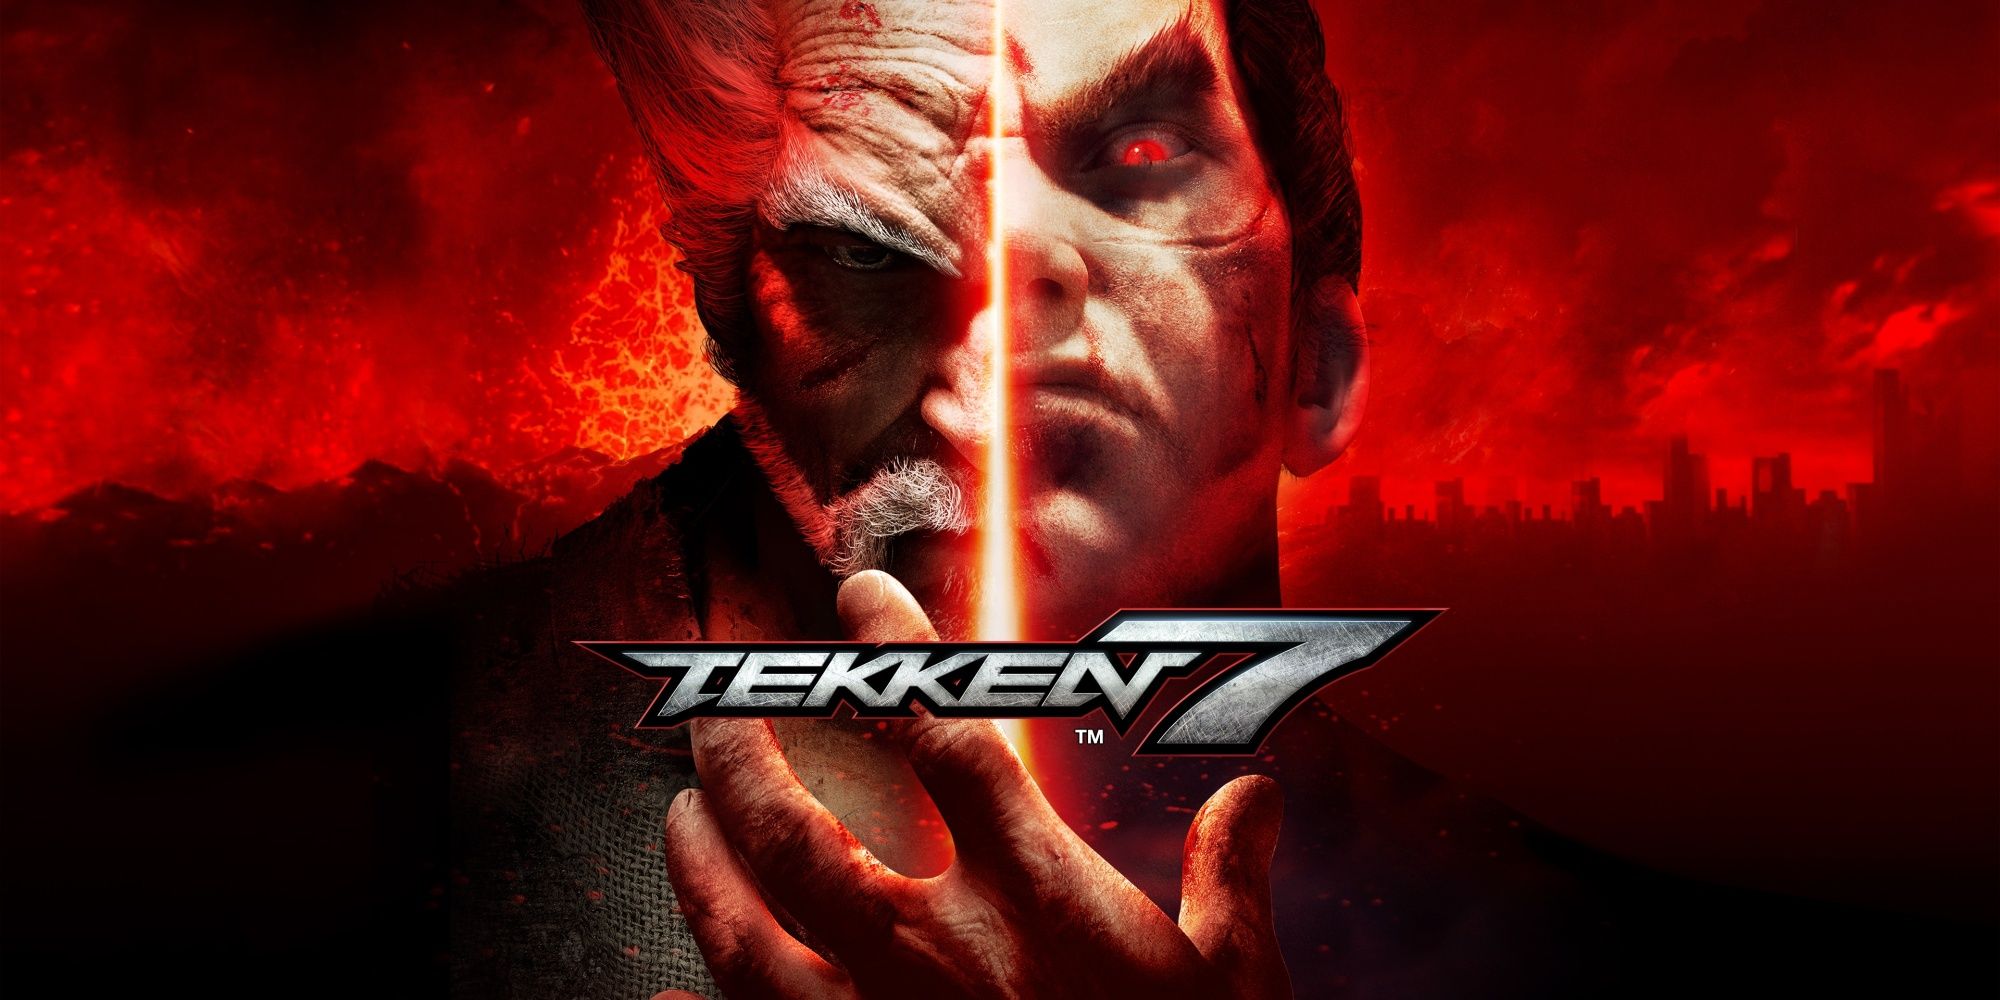 Heihachi and Kazuya from the Tekken series